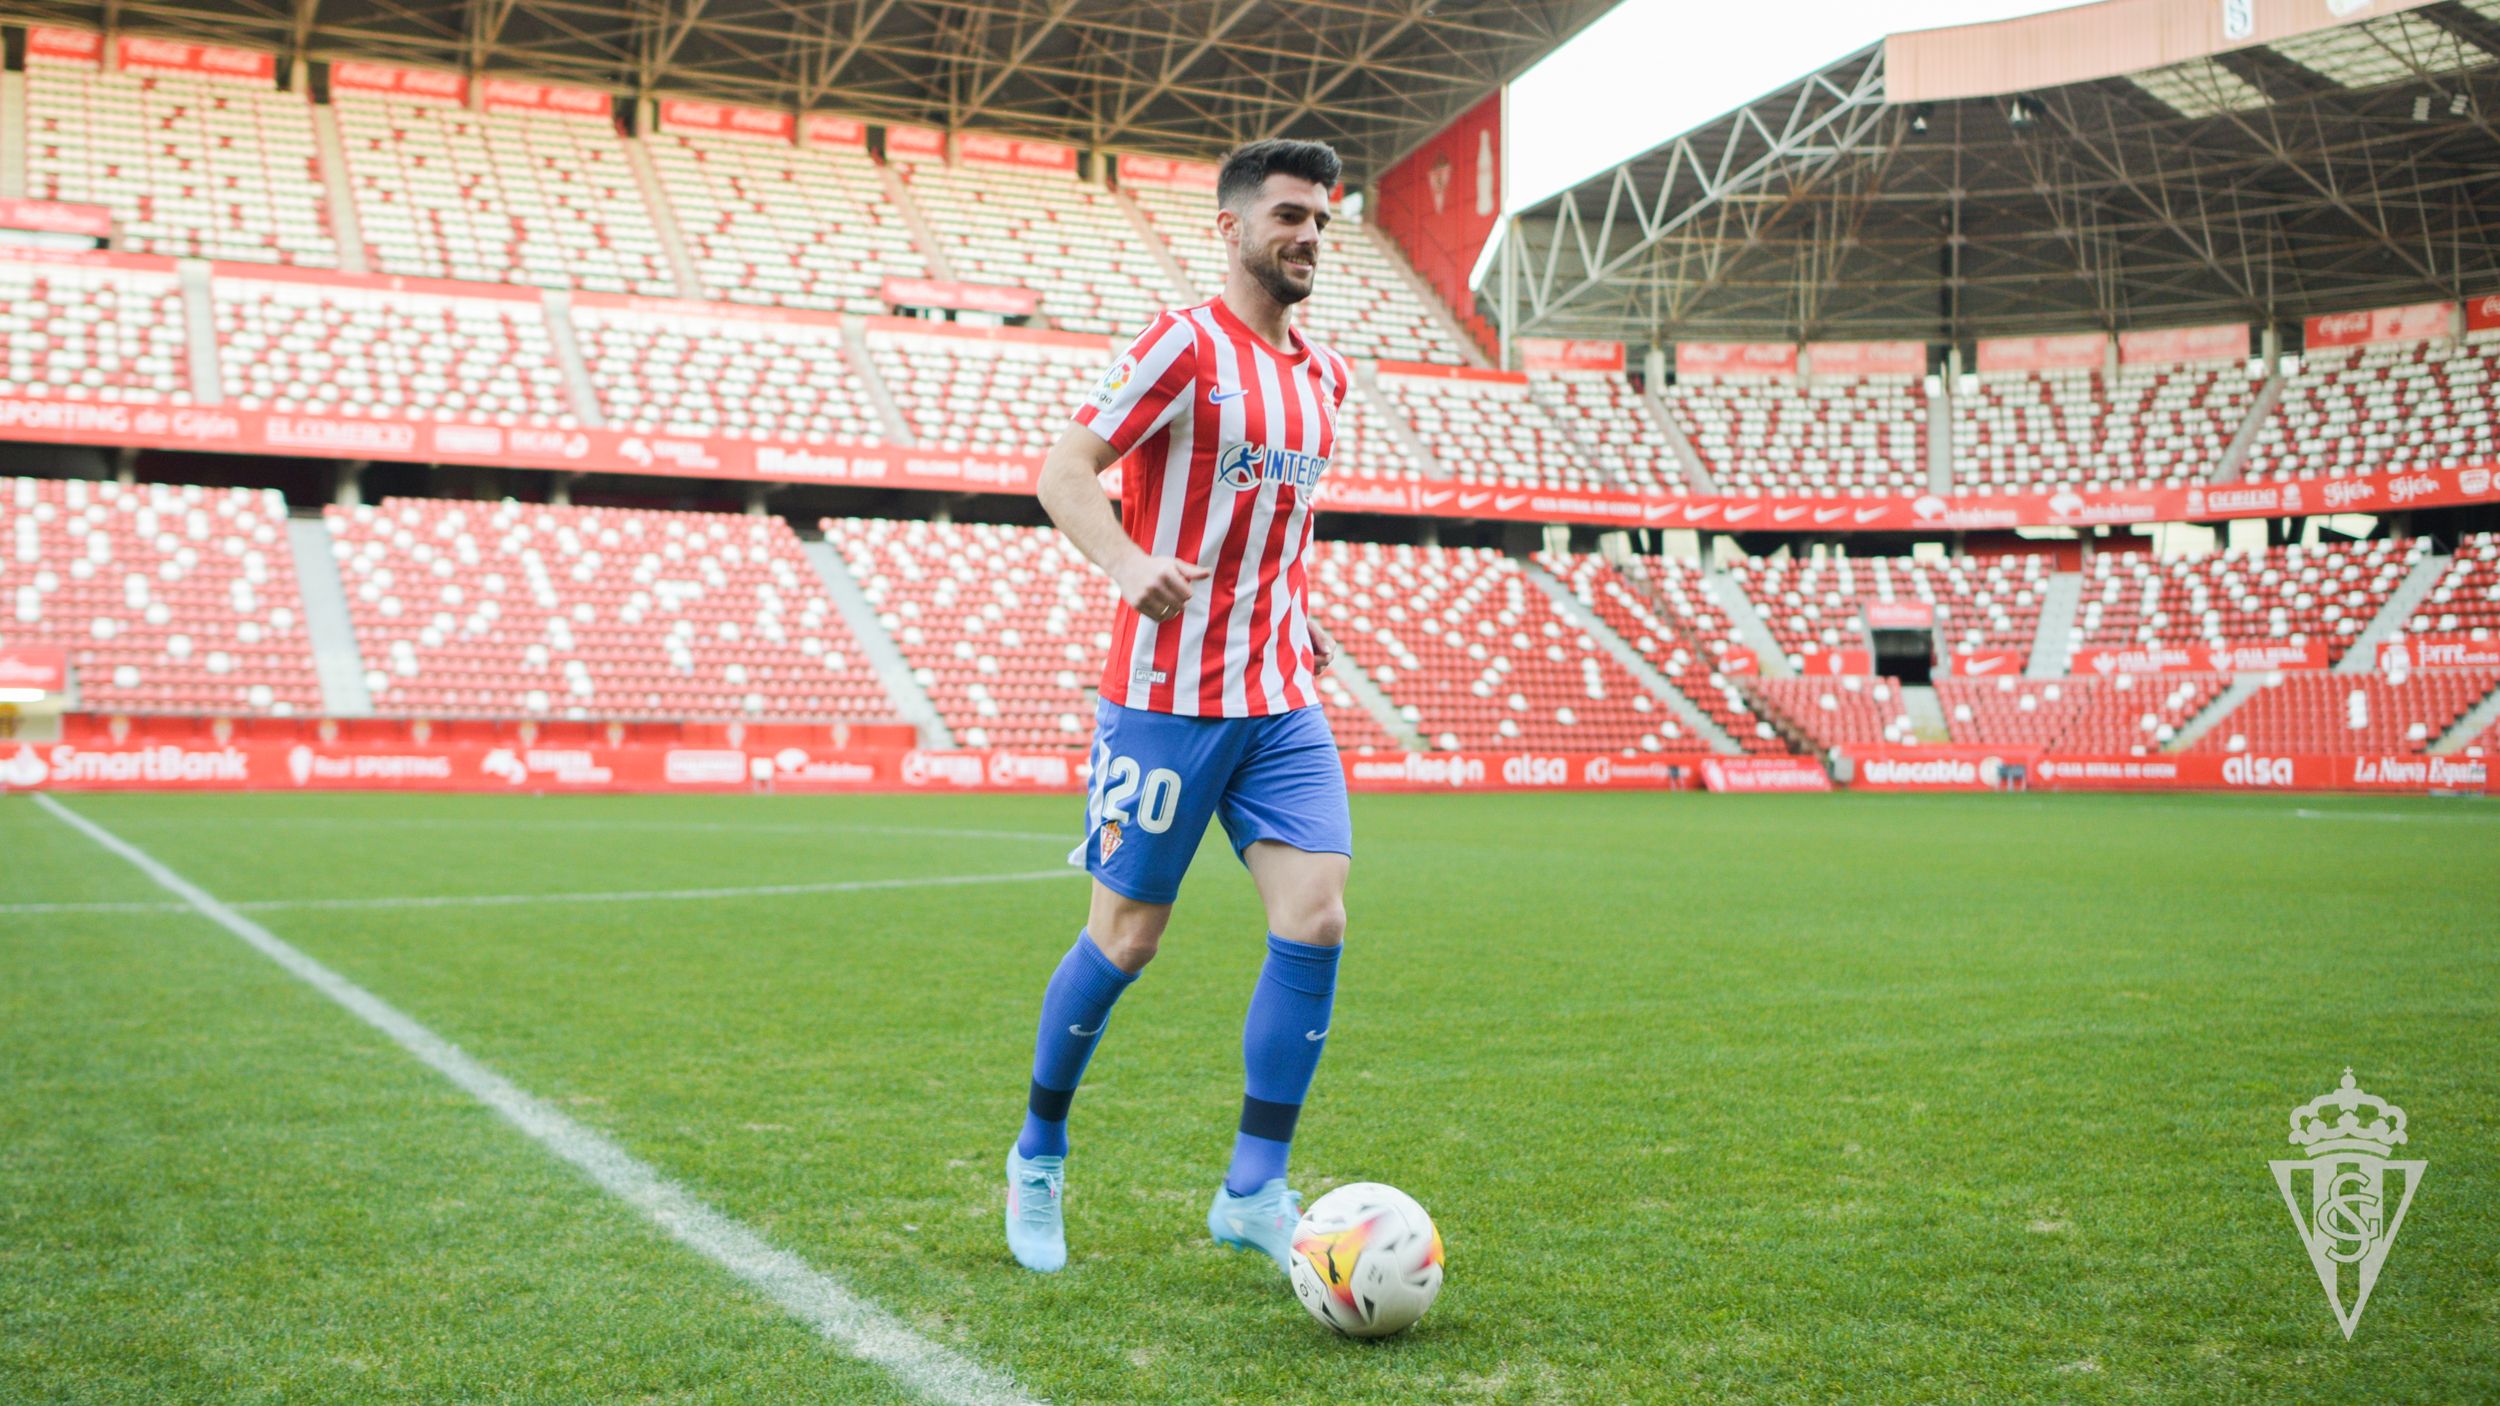 Jordi Calavera. Sporting